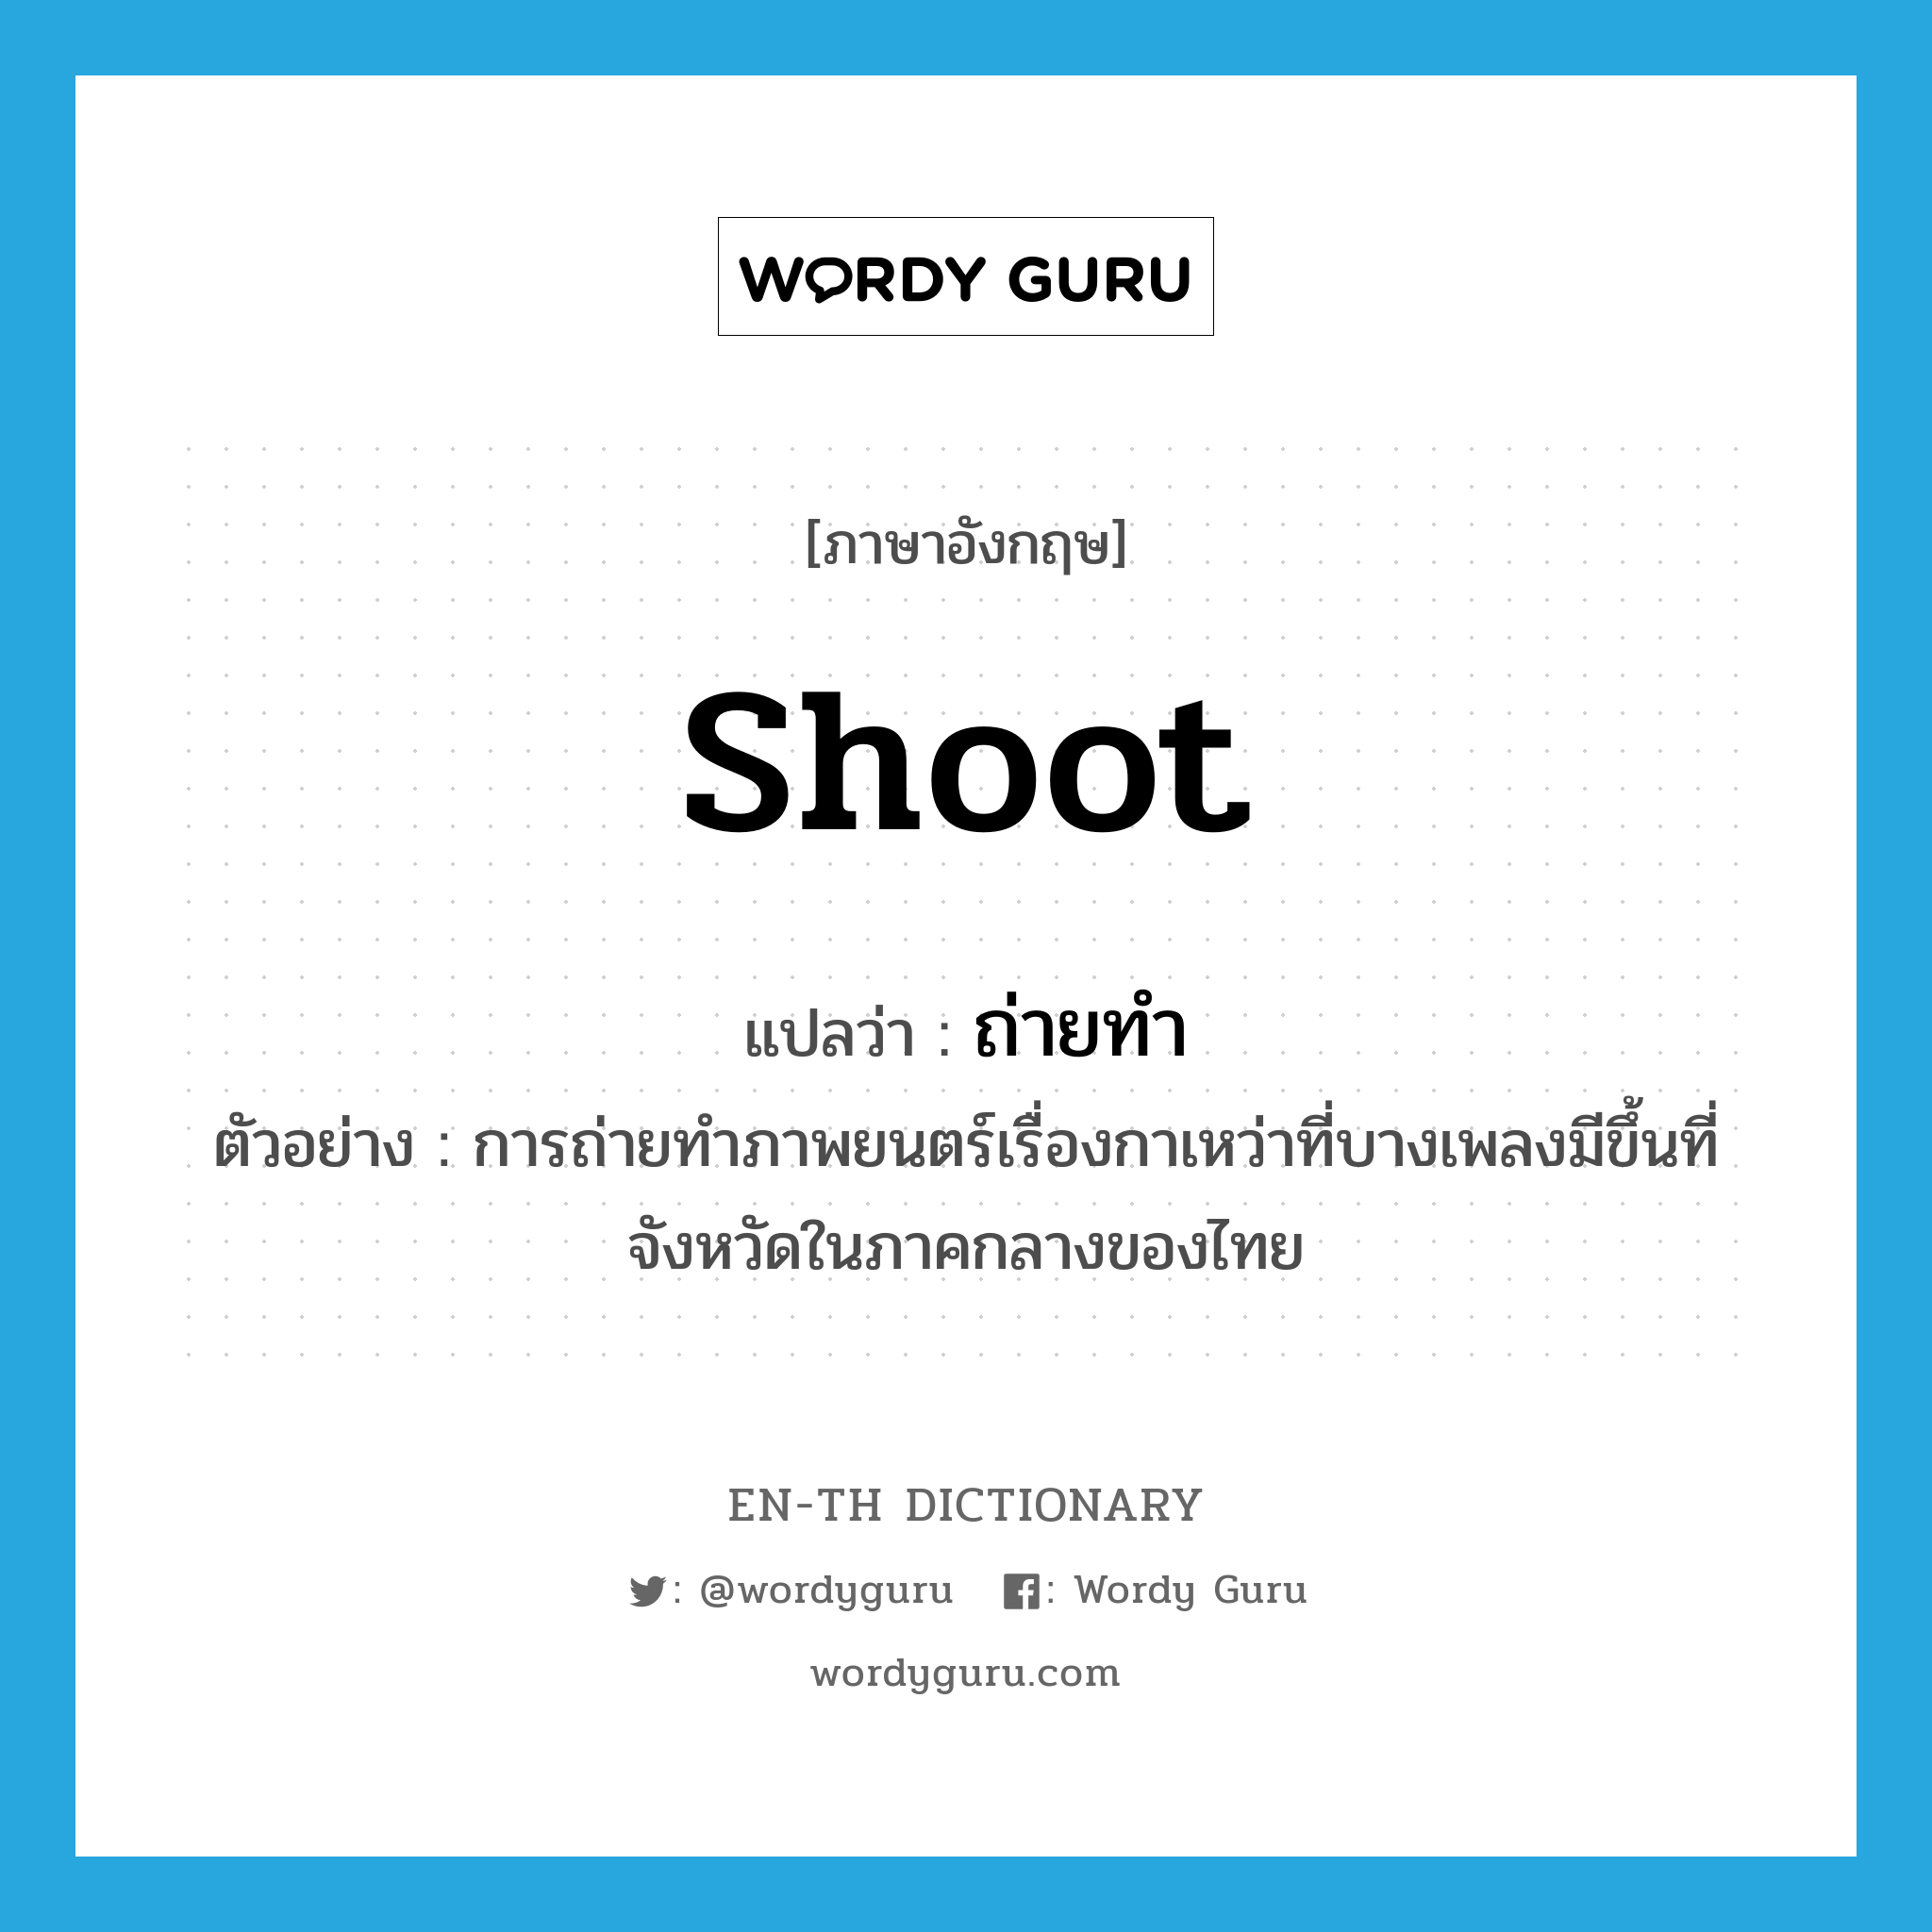 ถ่ายทำ ภาษาอังกฤษ?, คำศัพท์ภาษาอังกฤษ ถ่ายทำ แปลว่า shoot ประเภท V ตัวอย่าง การถ่ายทำภาพยนตร์เรื่องกาเหว่าที่บางเพลงมีขึ้นที่จังหวัดในภาคกลางของไทย หมวด V